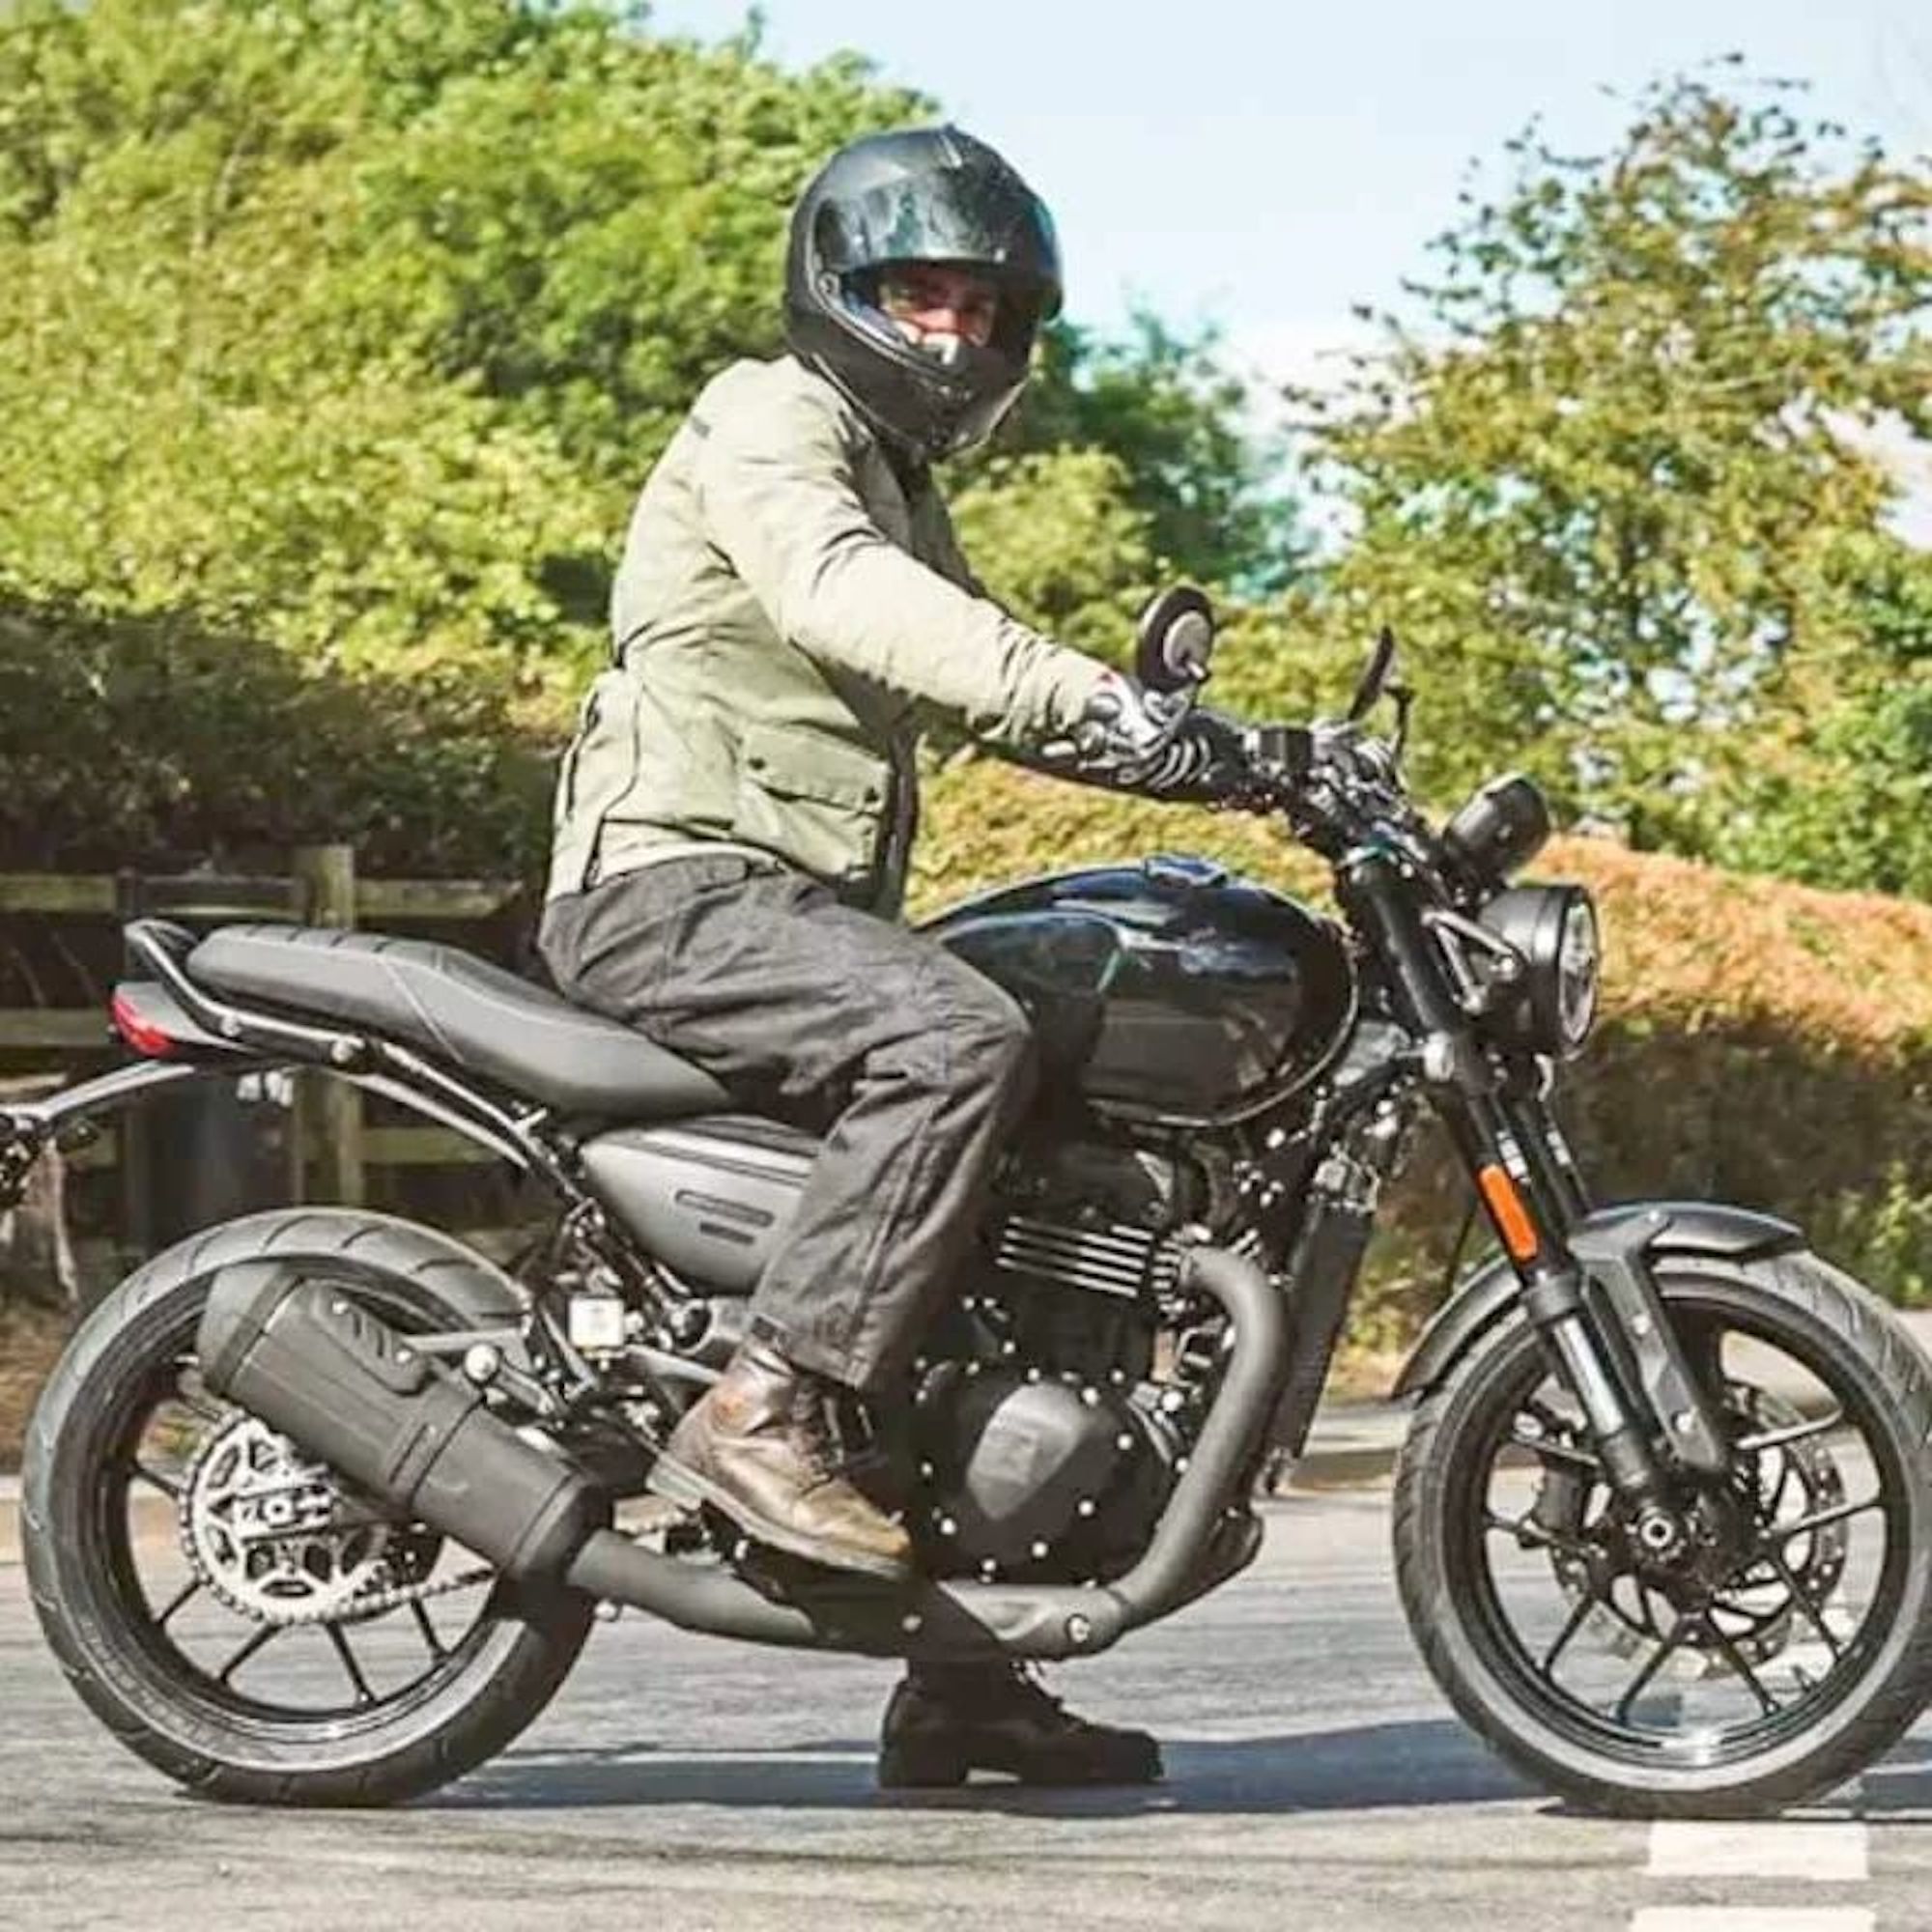 新的Neo-retro裸体和扰码器的视图由胜利和巴贾杰将7月面世。媒体来自摩托车运动。